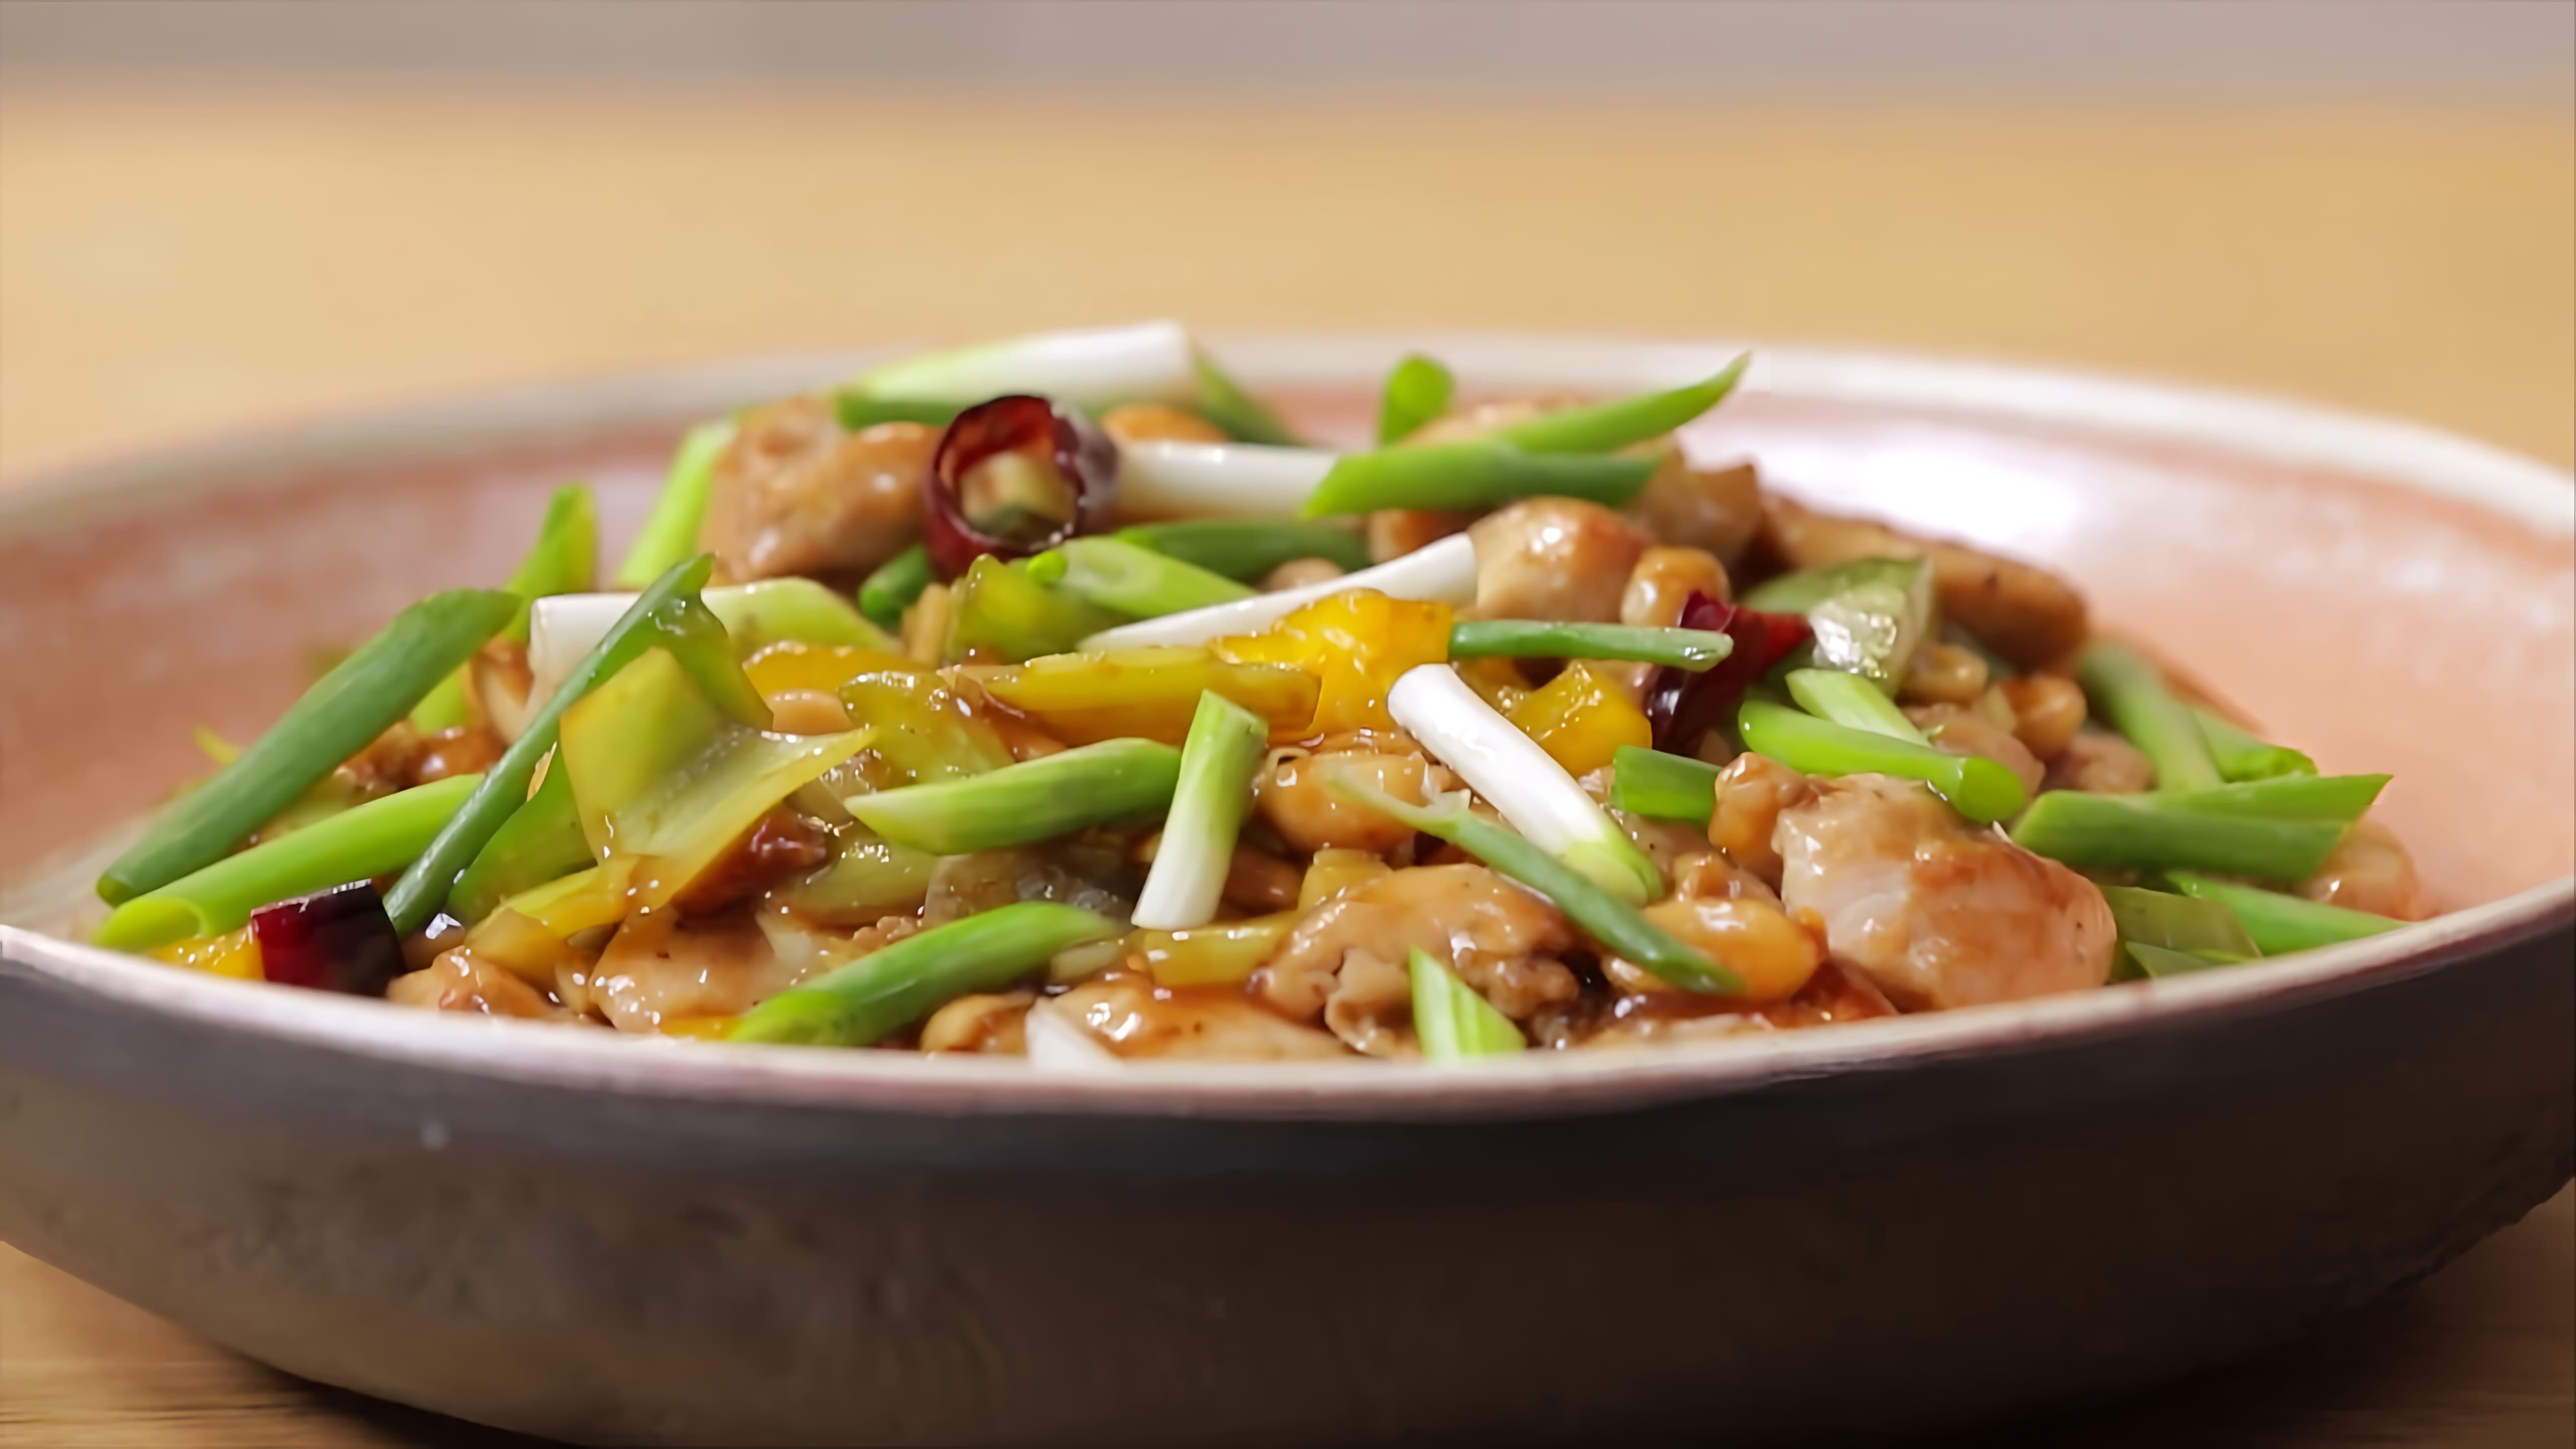 В этом видео демонстрируется рецепт курицы Гунбао, традиционного китайского блюда